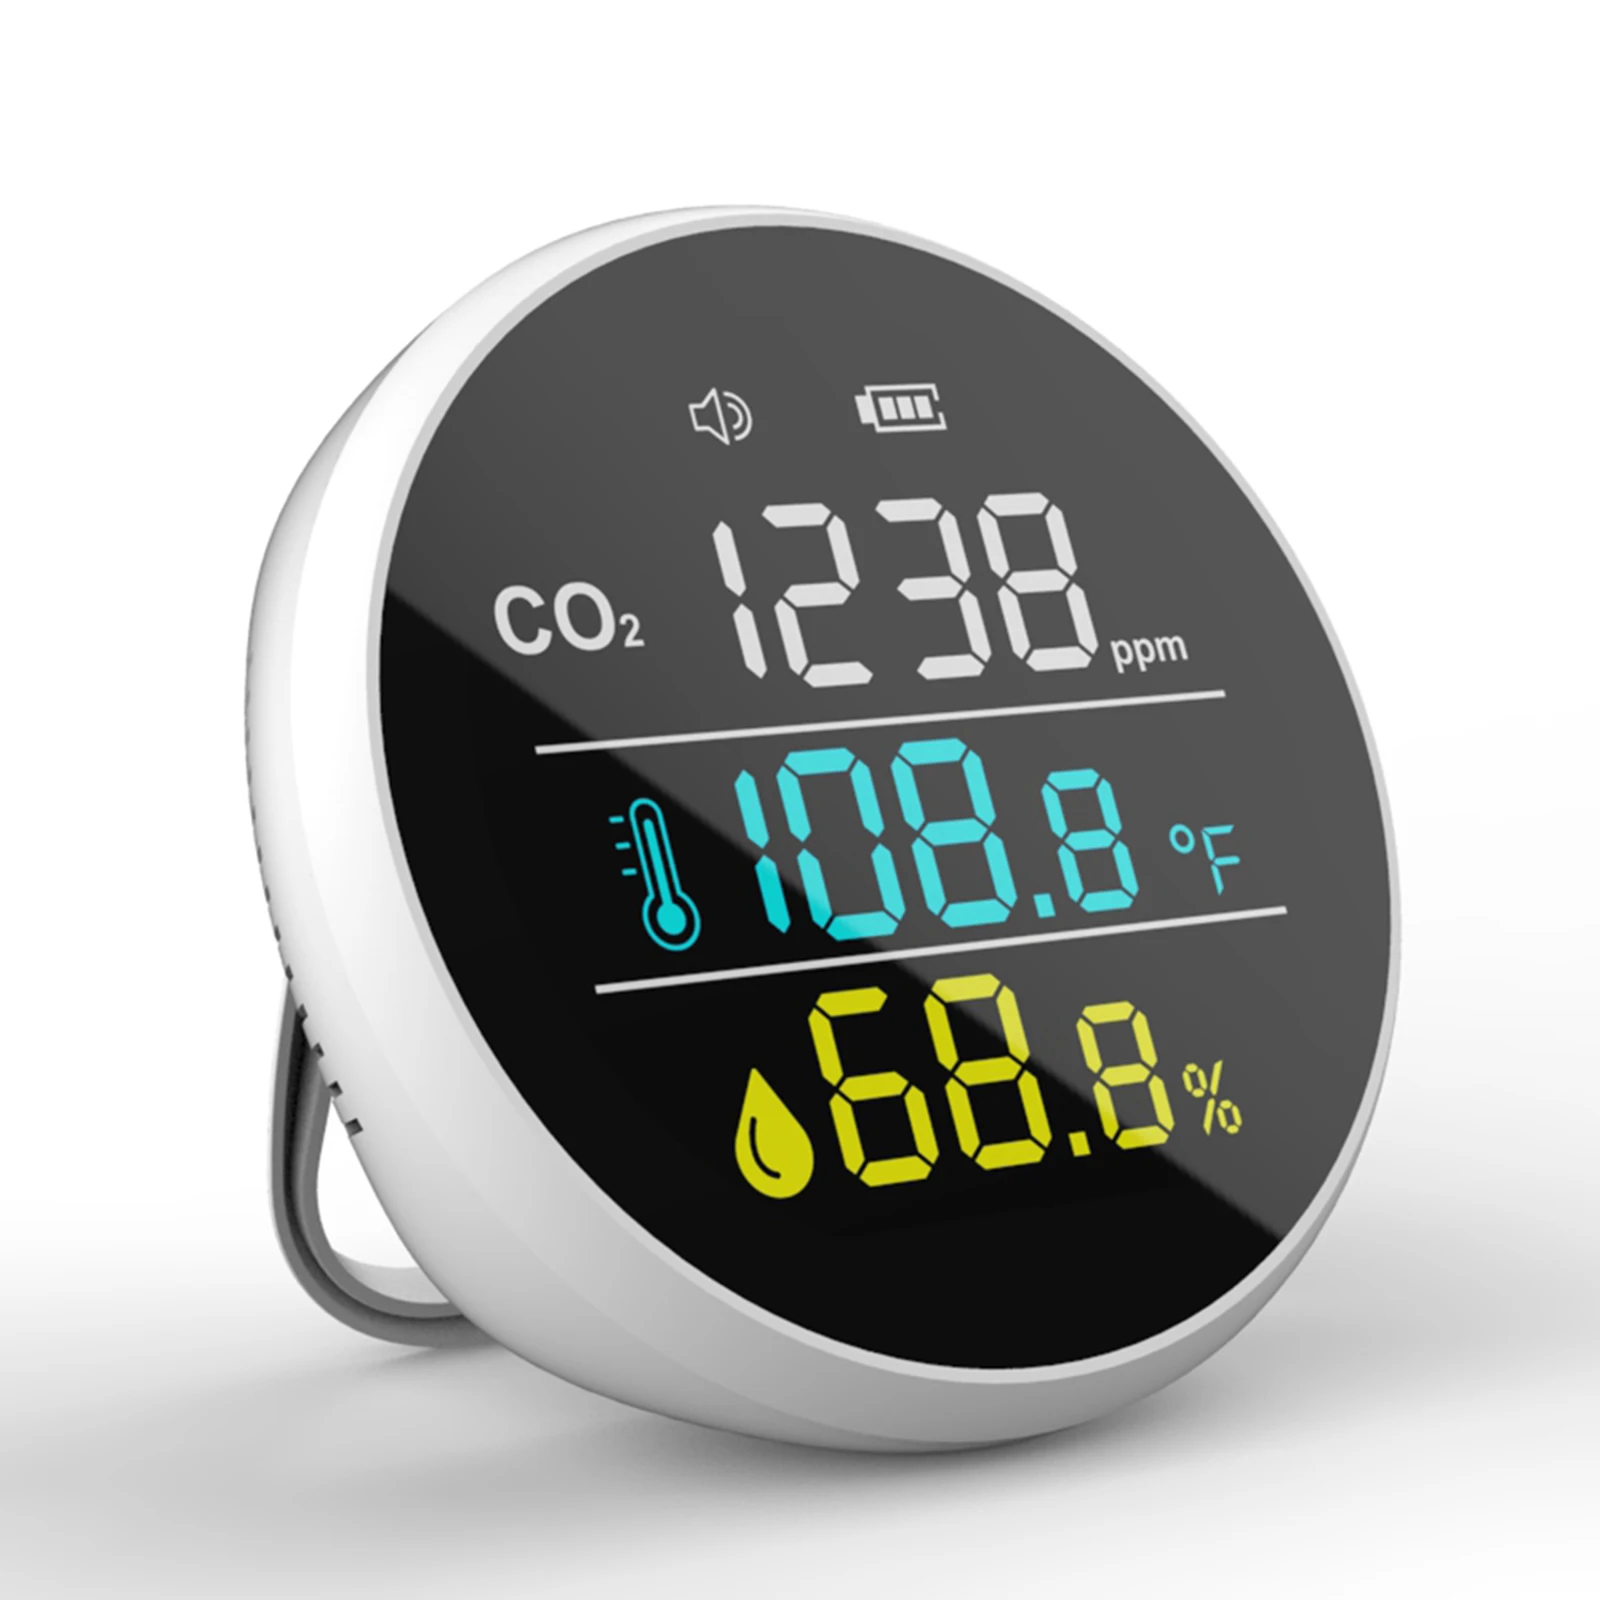 

Крытый CO2 Мини Измеритель детектор двуокиси углерода Температура влажности Сенсор тестер мониторинга качества воздуха в режиме реального ...